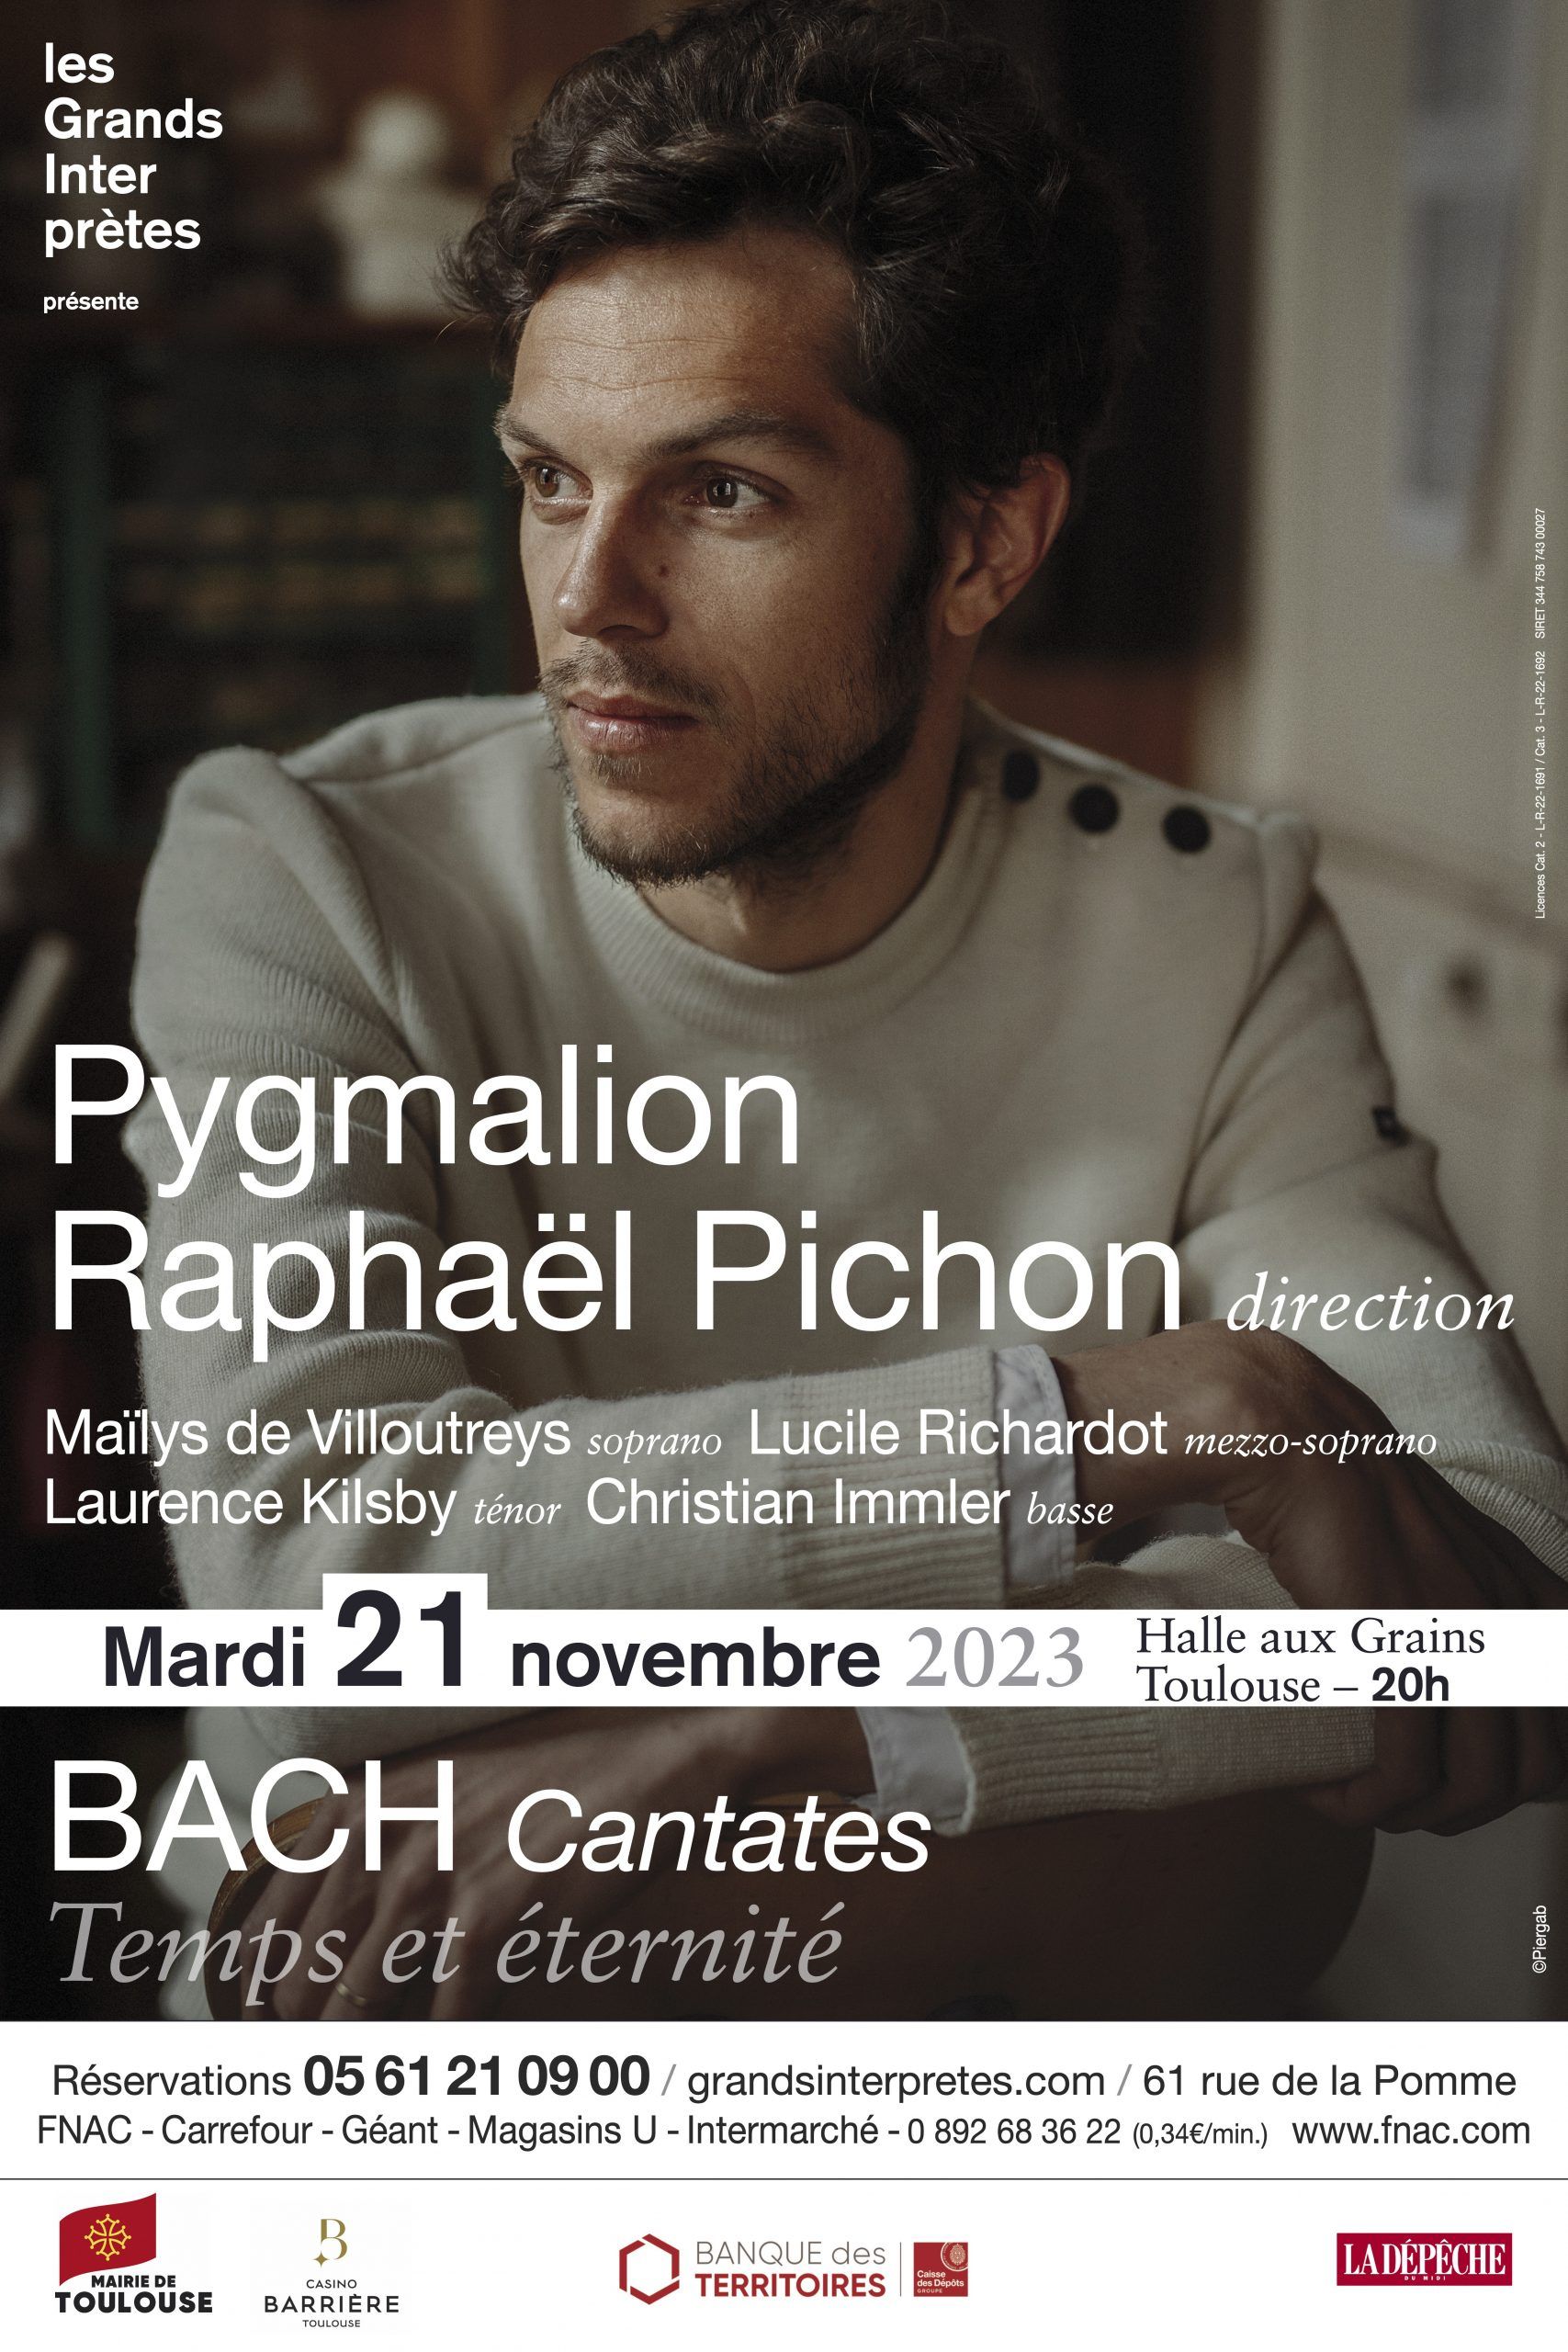 Les Grands Interprètes - Pygmalion et Raphaël Pichon